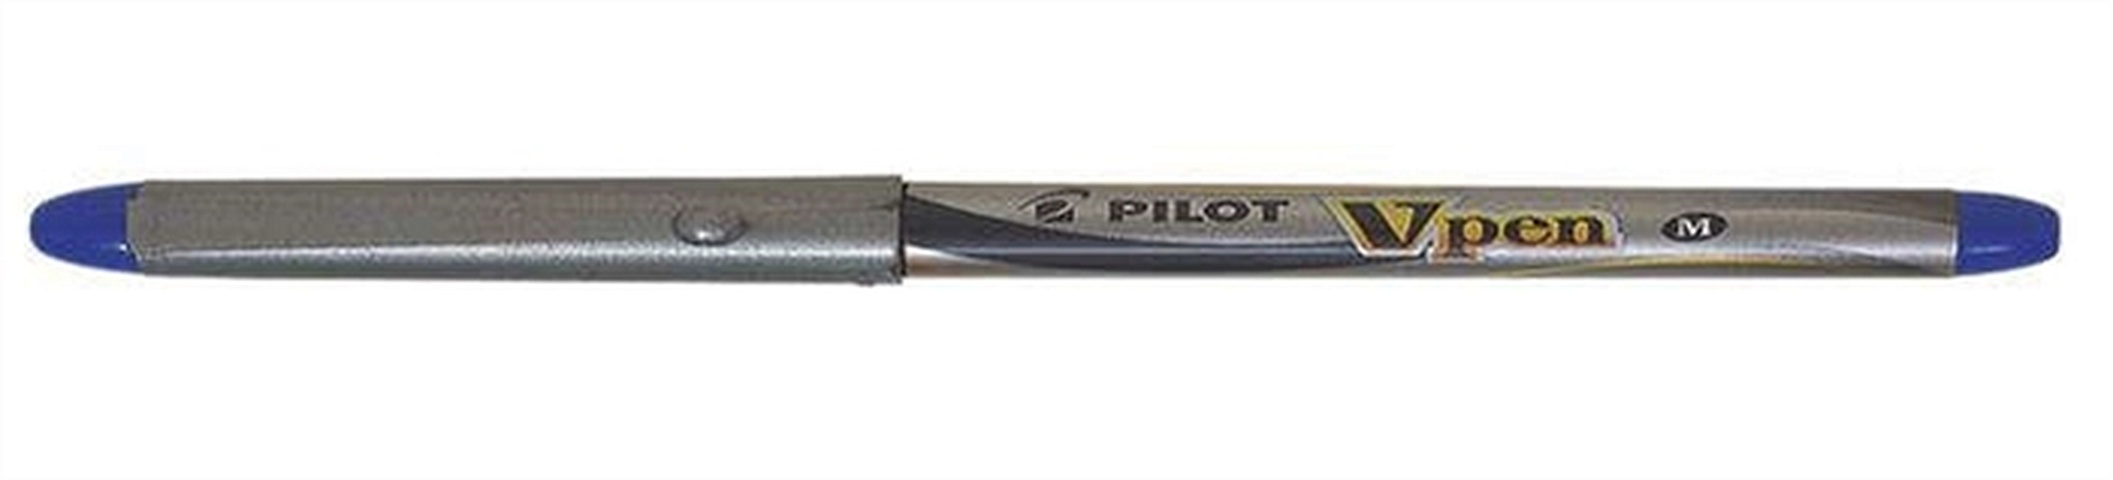 Ручка перьевая, синяя Pilot одноразовая SVP-4M L ручка перьевая pelikan school griffix pl805629 синий l для левшей карт уп